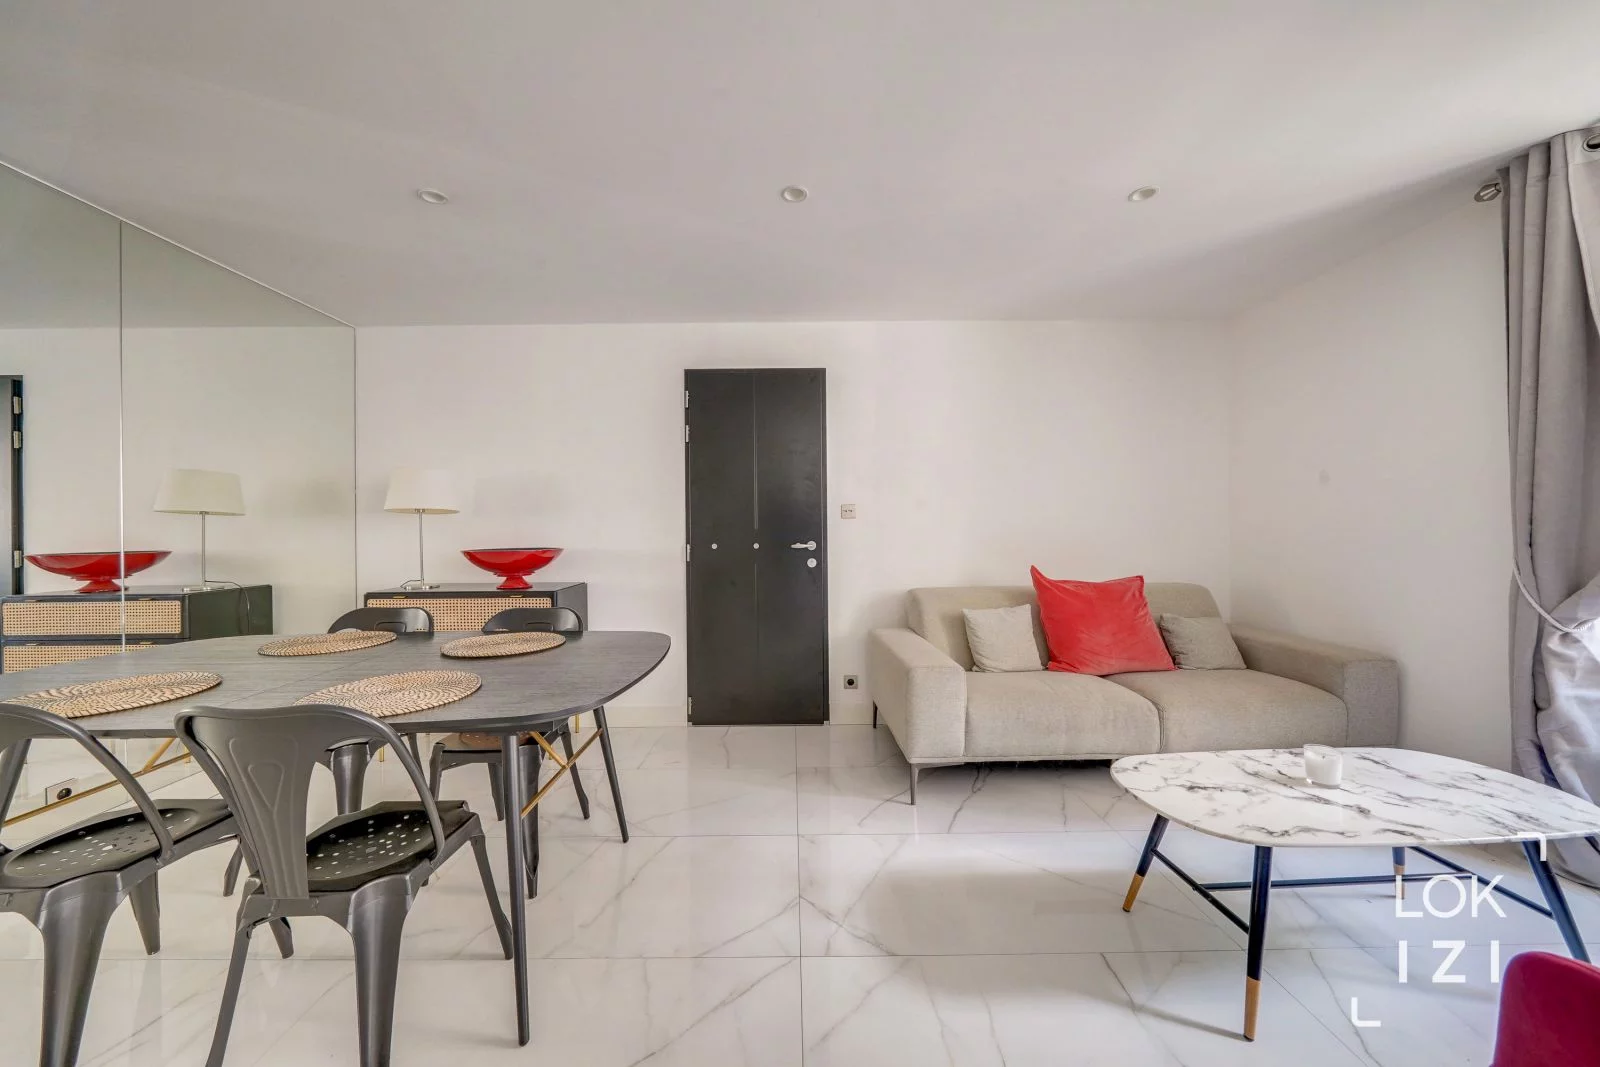 Location appartement 2 pièces 48m² (Bordeaux - Jardin Public)